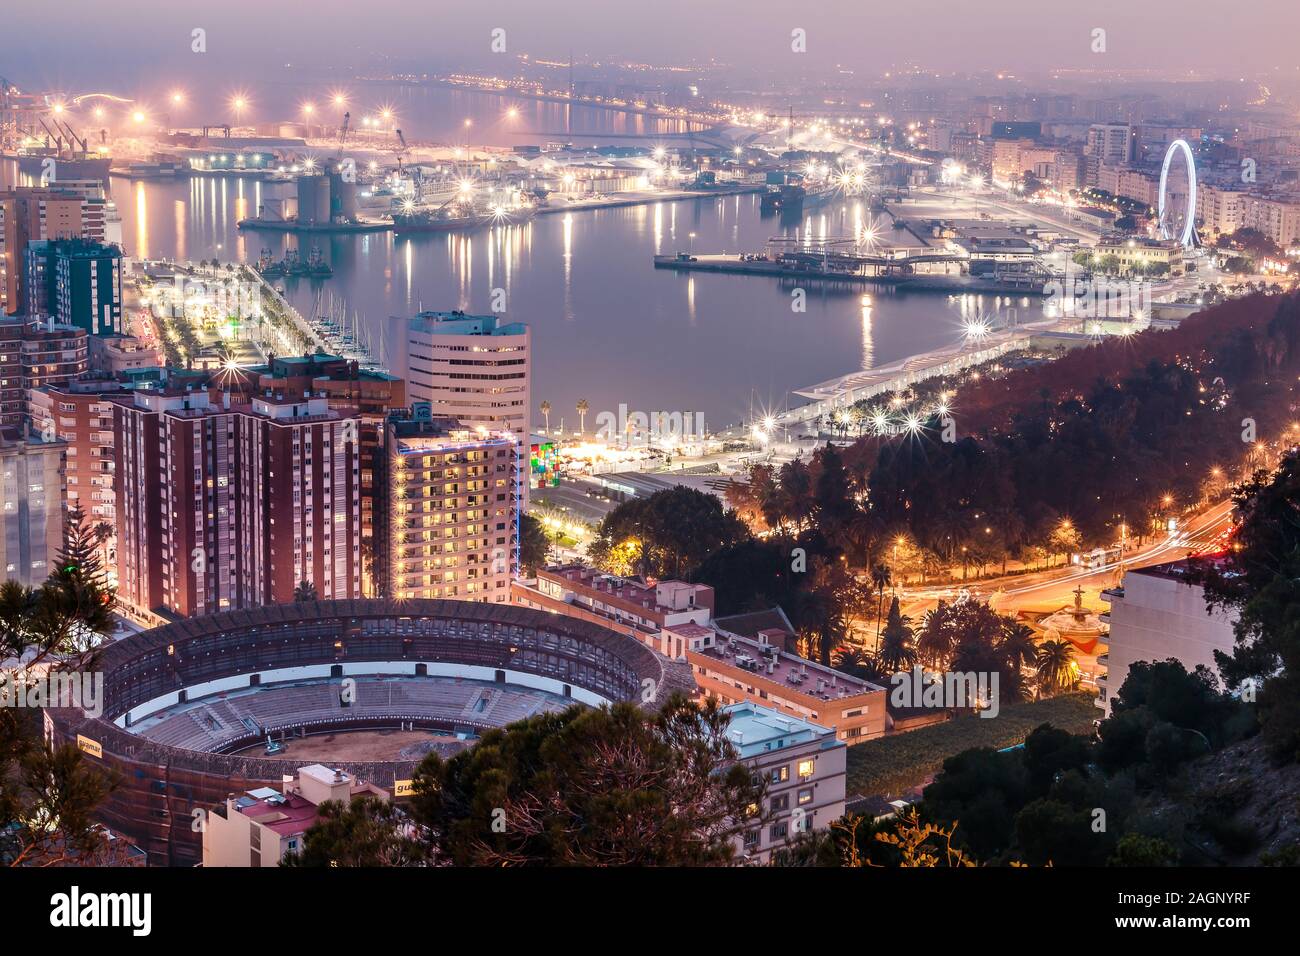 Panoramablick von Málaga an der spanischen Mittelmeerküste in der Nacht. Blick auf die Stadt an der Costa del Sol mit beleuchteten Hafen, Wohngebiet bauen Stockfoto